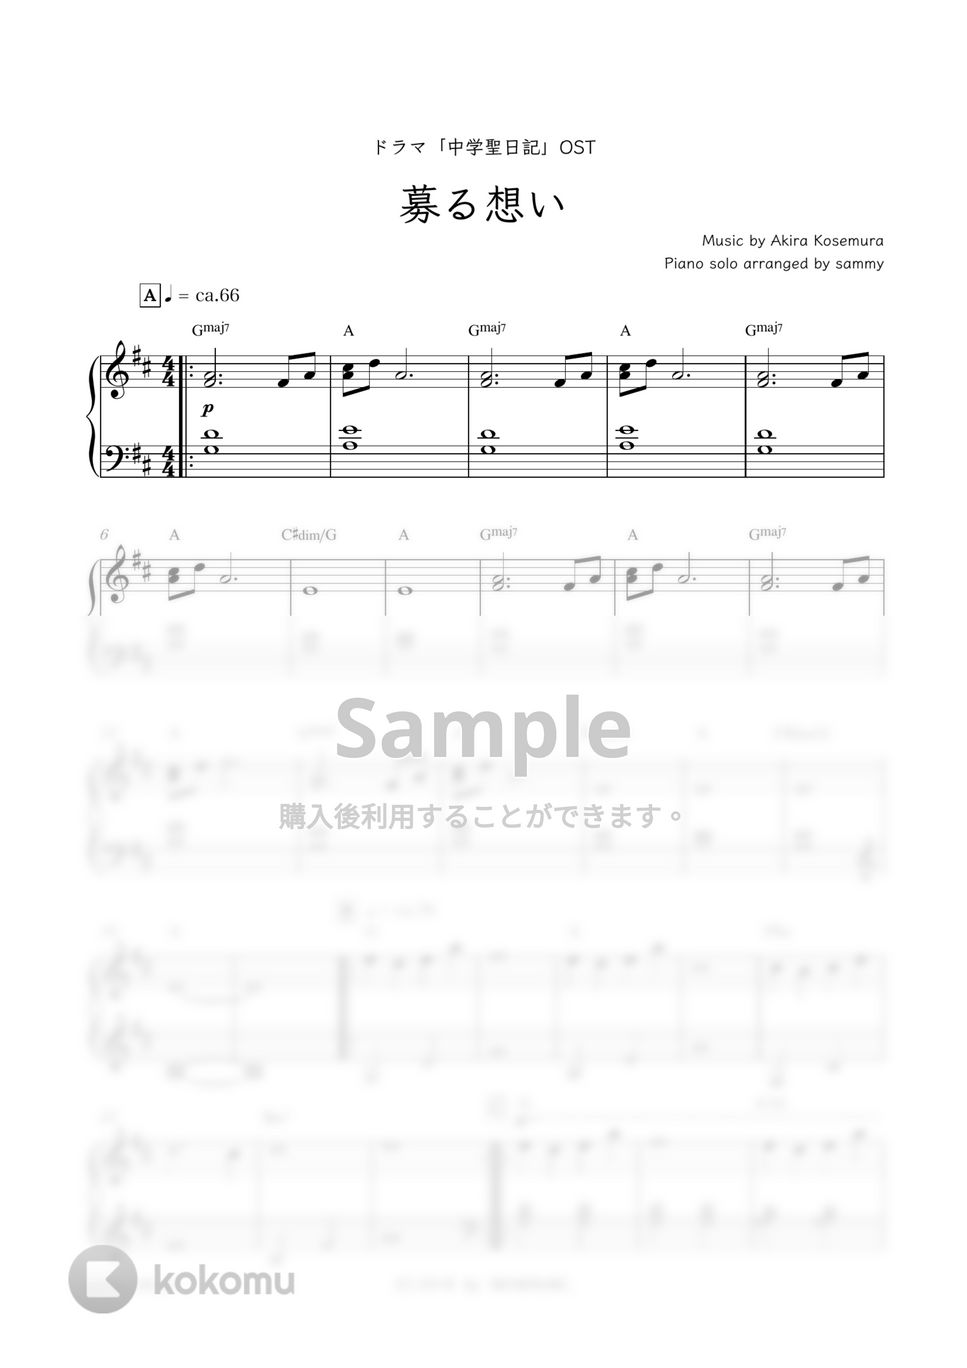 ドラマ『中学聖日記』OST - 募る想い by sammy